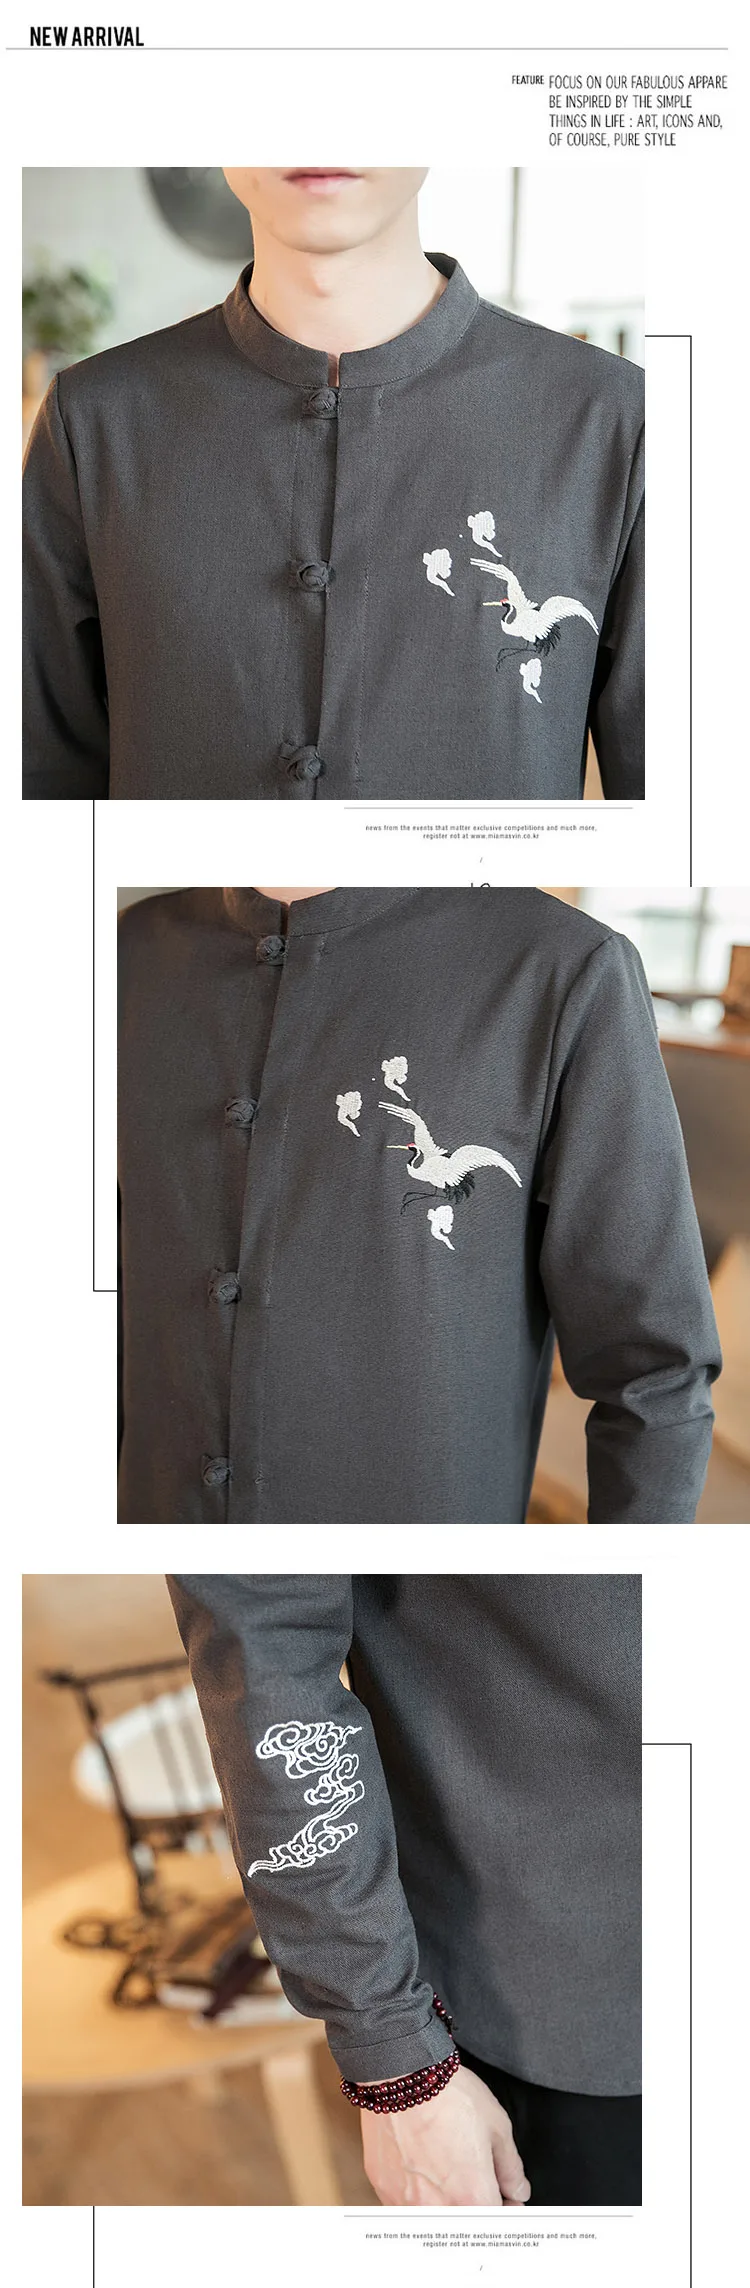 Sinicism магазин мужской кран вышивка рубашки с длинными рукавами для мужчин Осенняя винтажная одежда в китайском стиле Мужская негабаритная Свободная рубашка